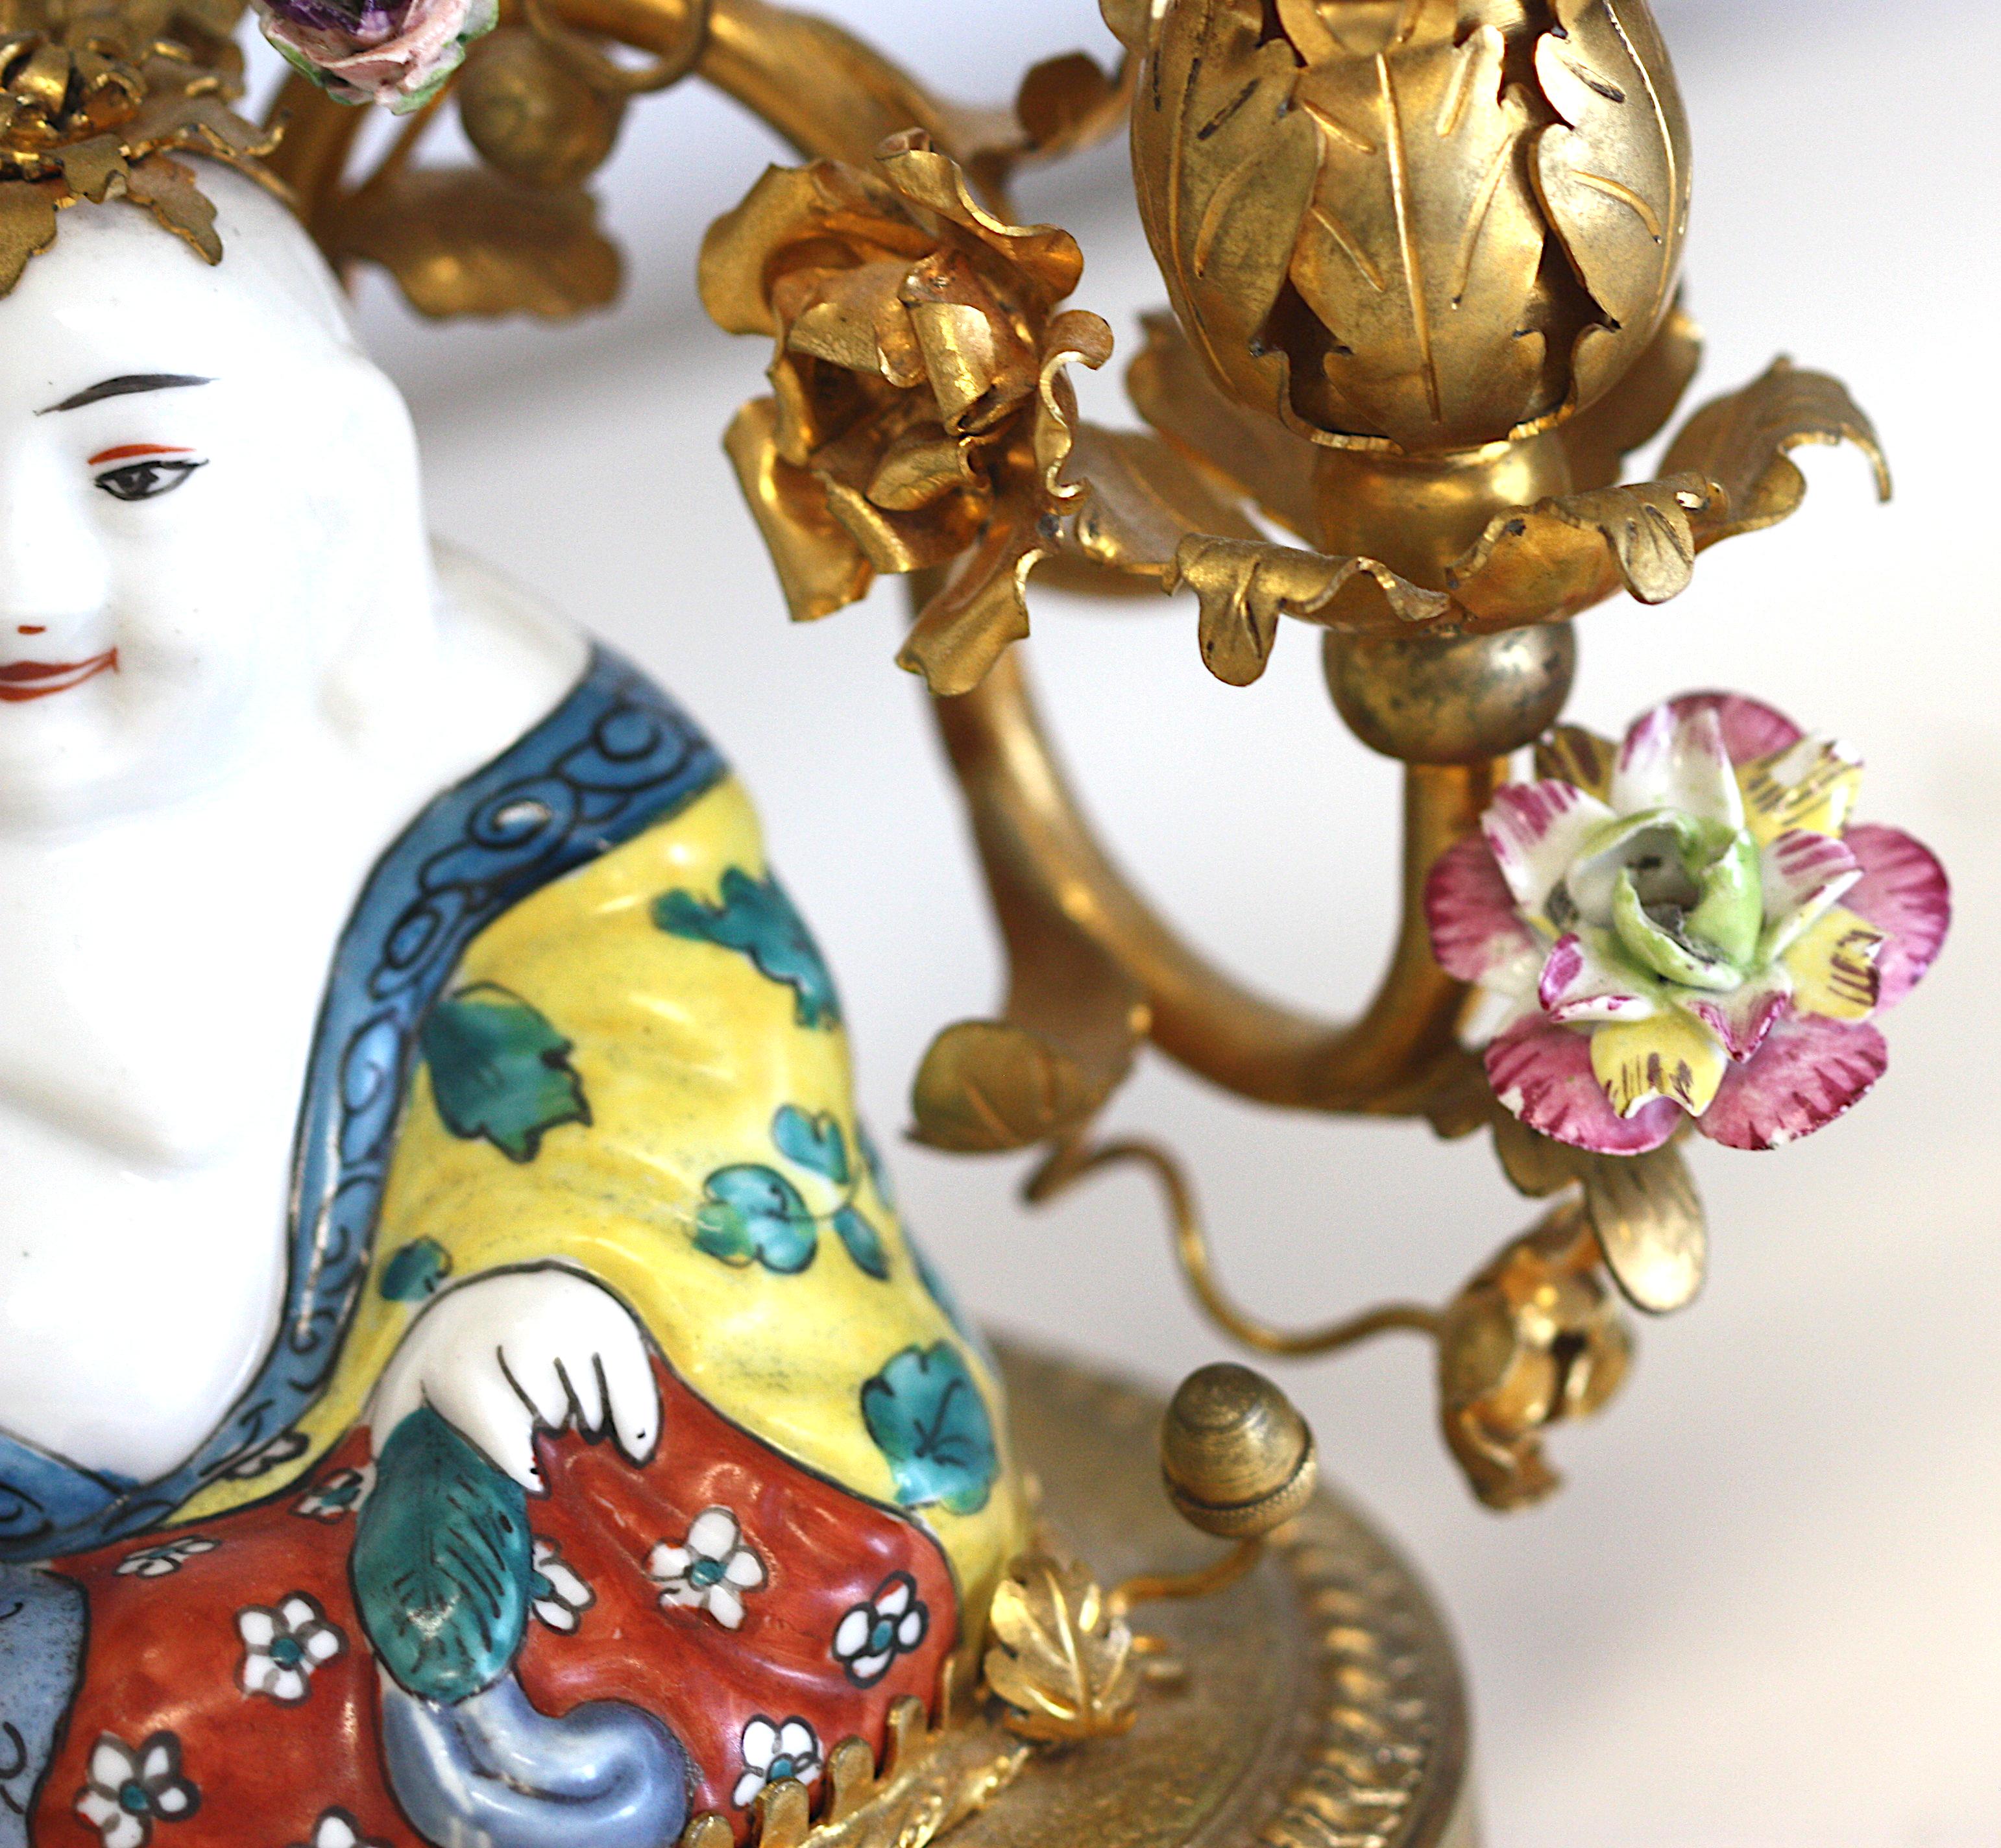 
Porcelaine de style Louis XV Lampe à deux lumières
Composé d'un Bouddha assis en porcelaine, devant deux bras de bougies feuillues en bronze doré, parsemés de fleurs en porcelaine, sur une base ovale en bronze. 
Hauteur totale : 58,42 cm, largeur :